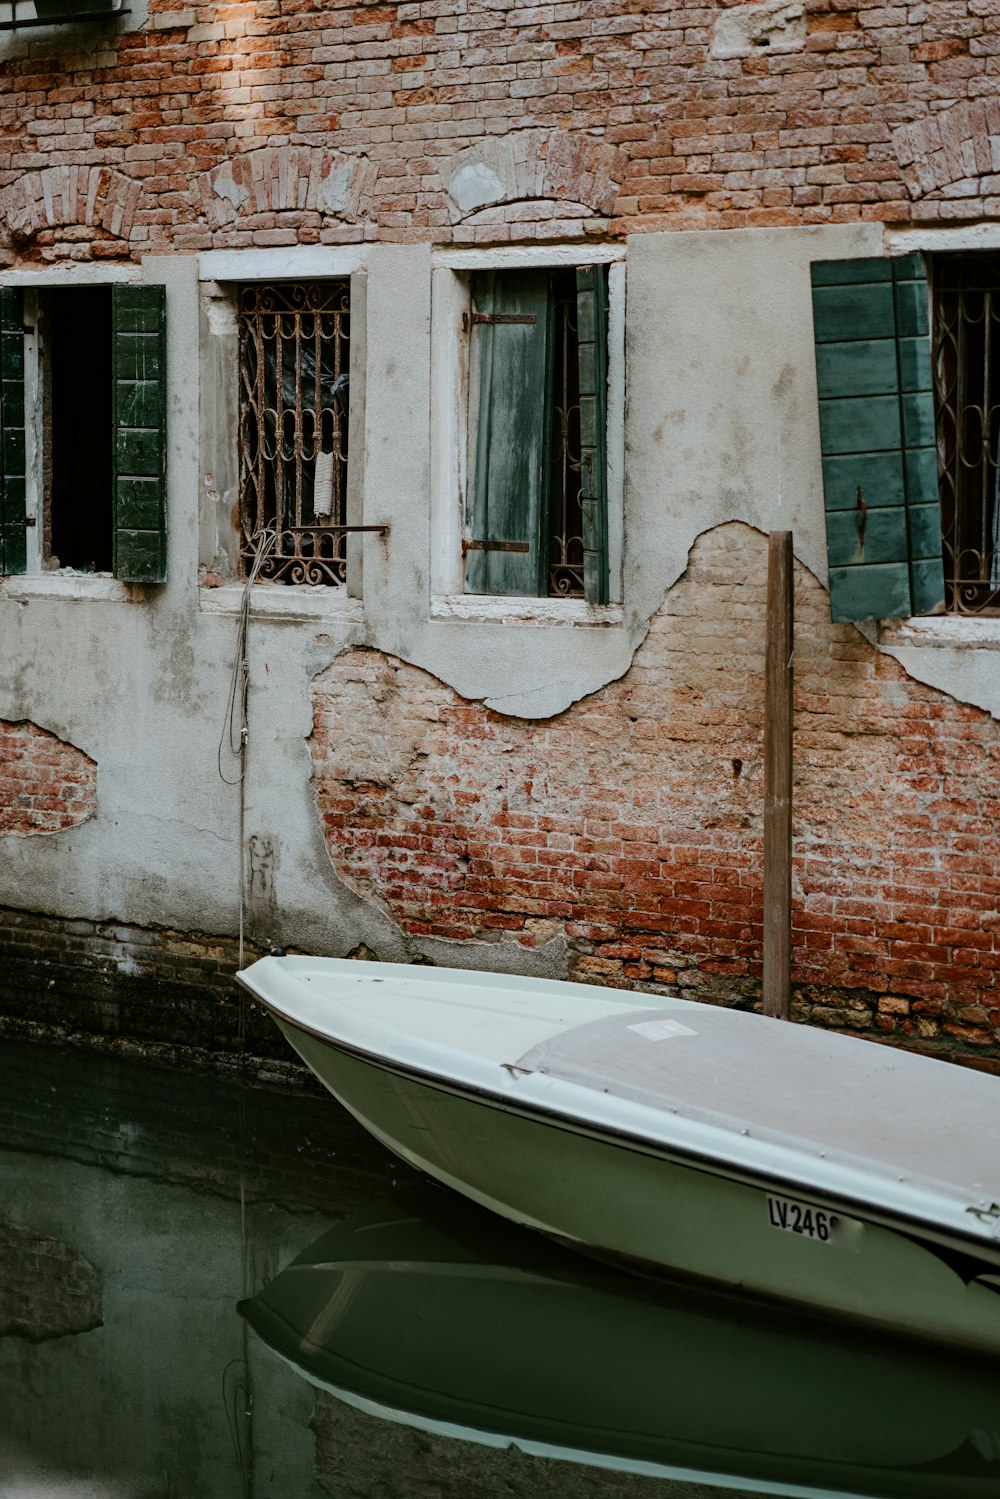 Weißes Boot neben Backsteinmauer